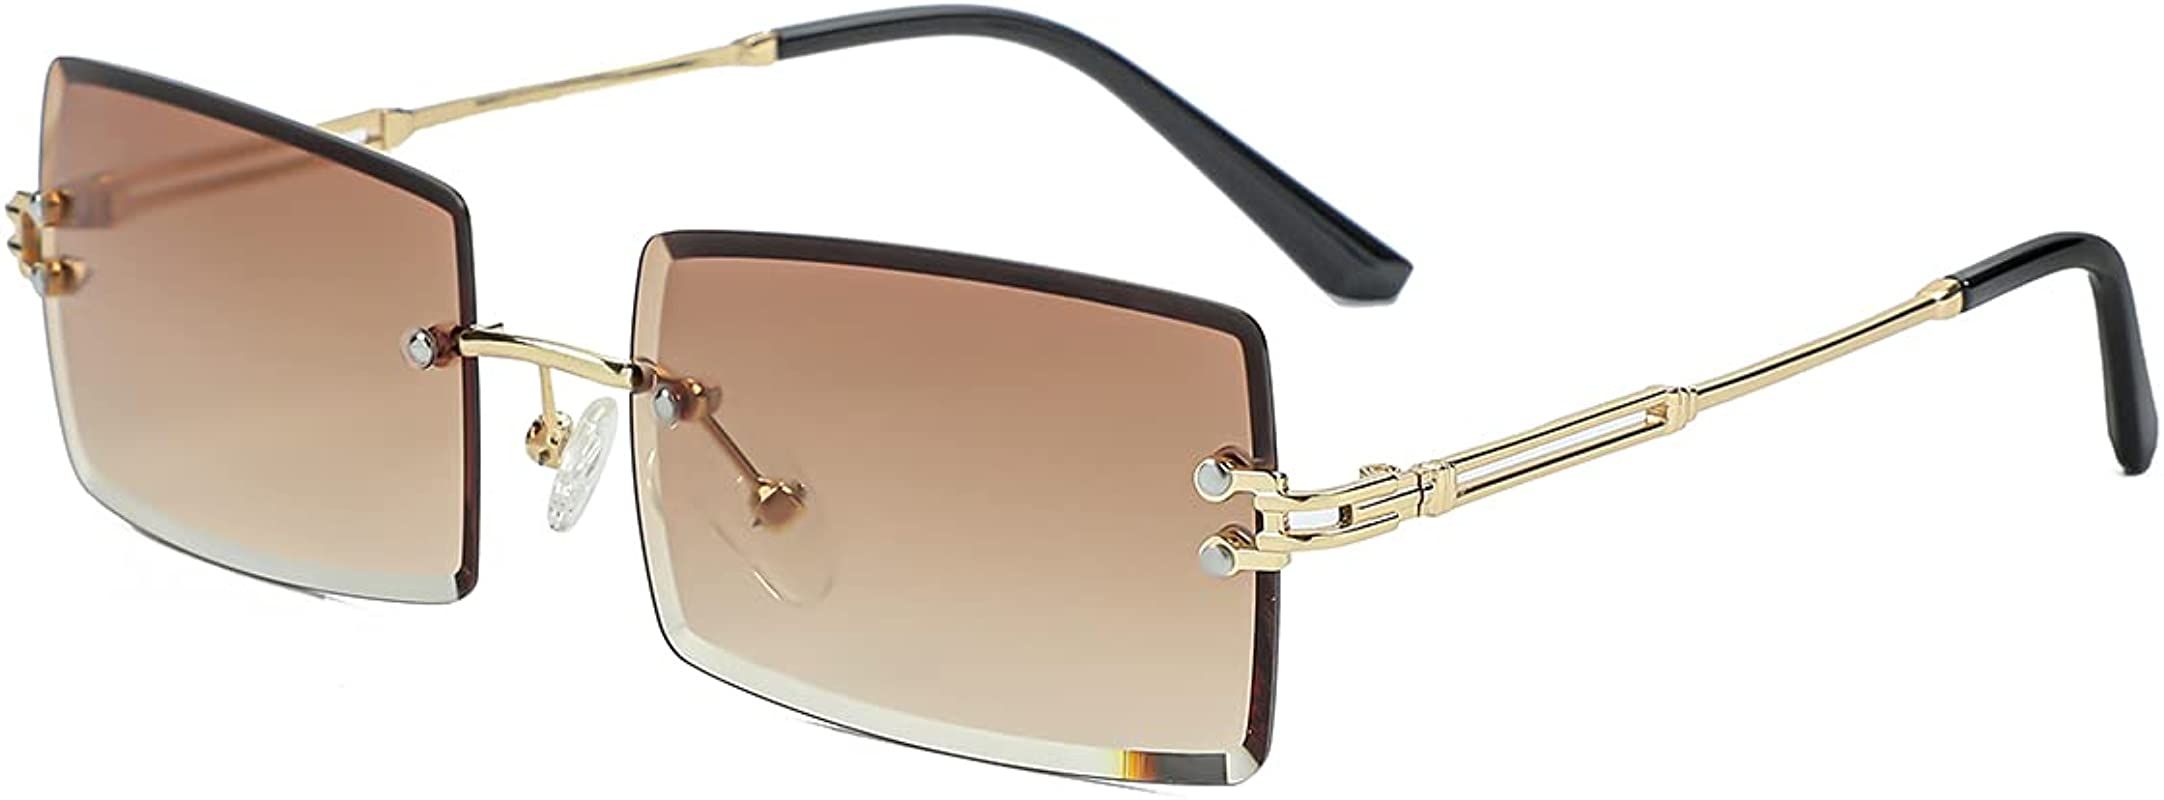 Gleyemor Rimless Rectangle Sunglasses for Women Men Fashion Frameless Small Square Glasses | Amazon (US)